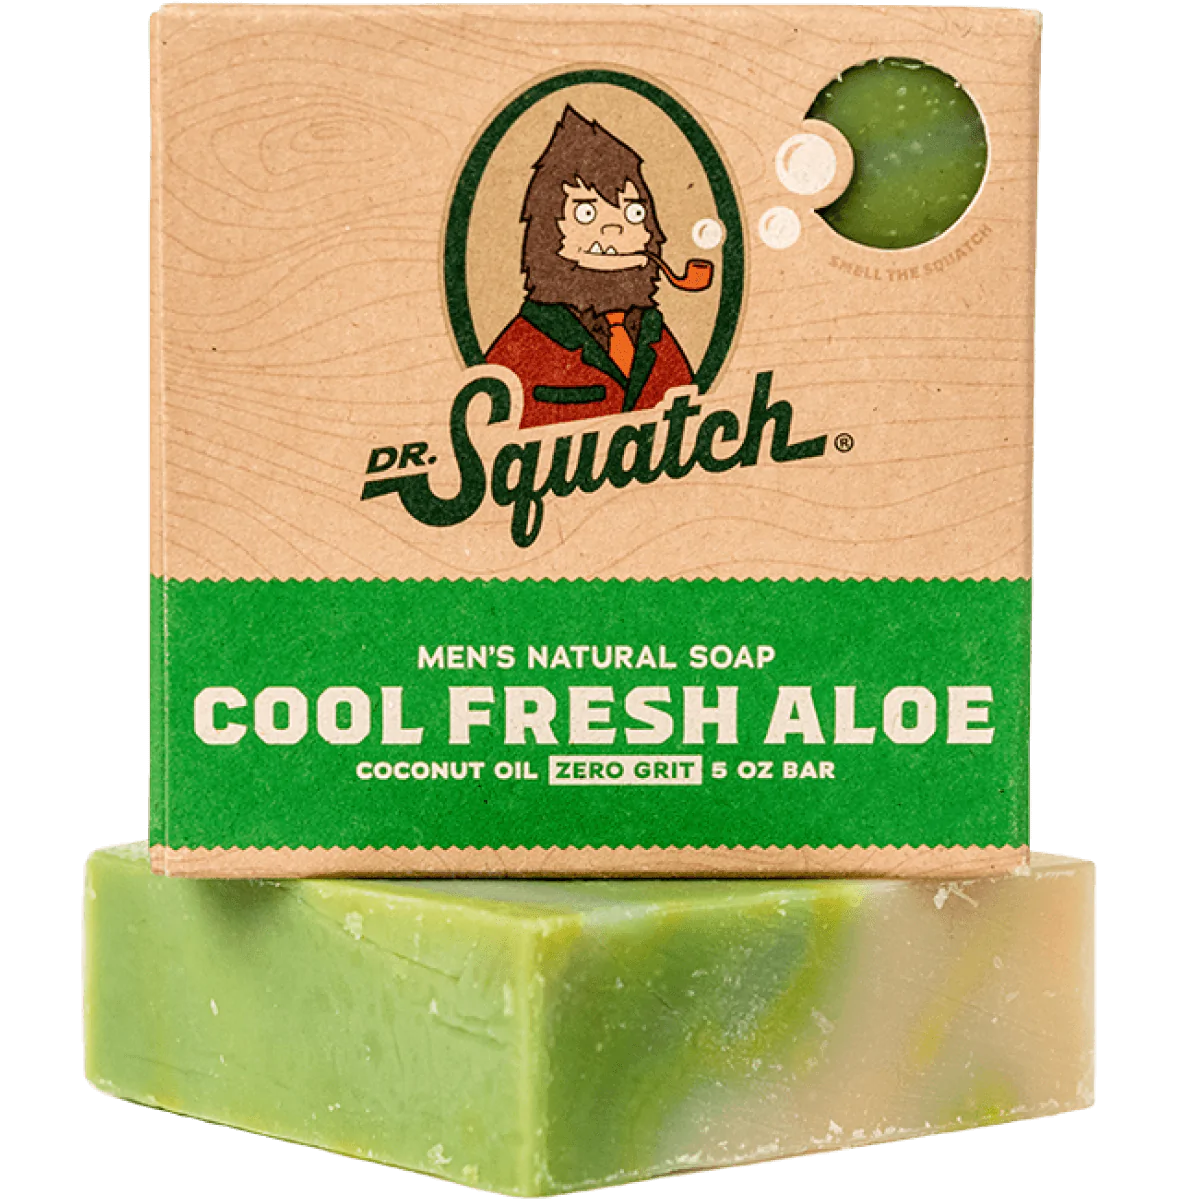 Dr Squatch Soap Review